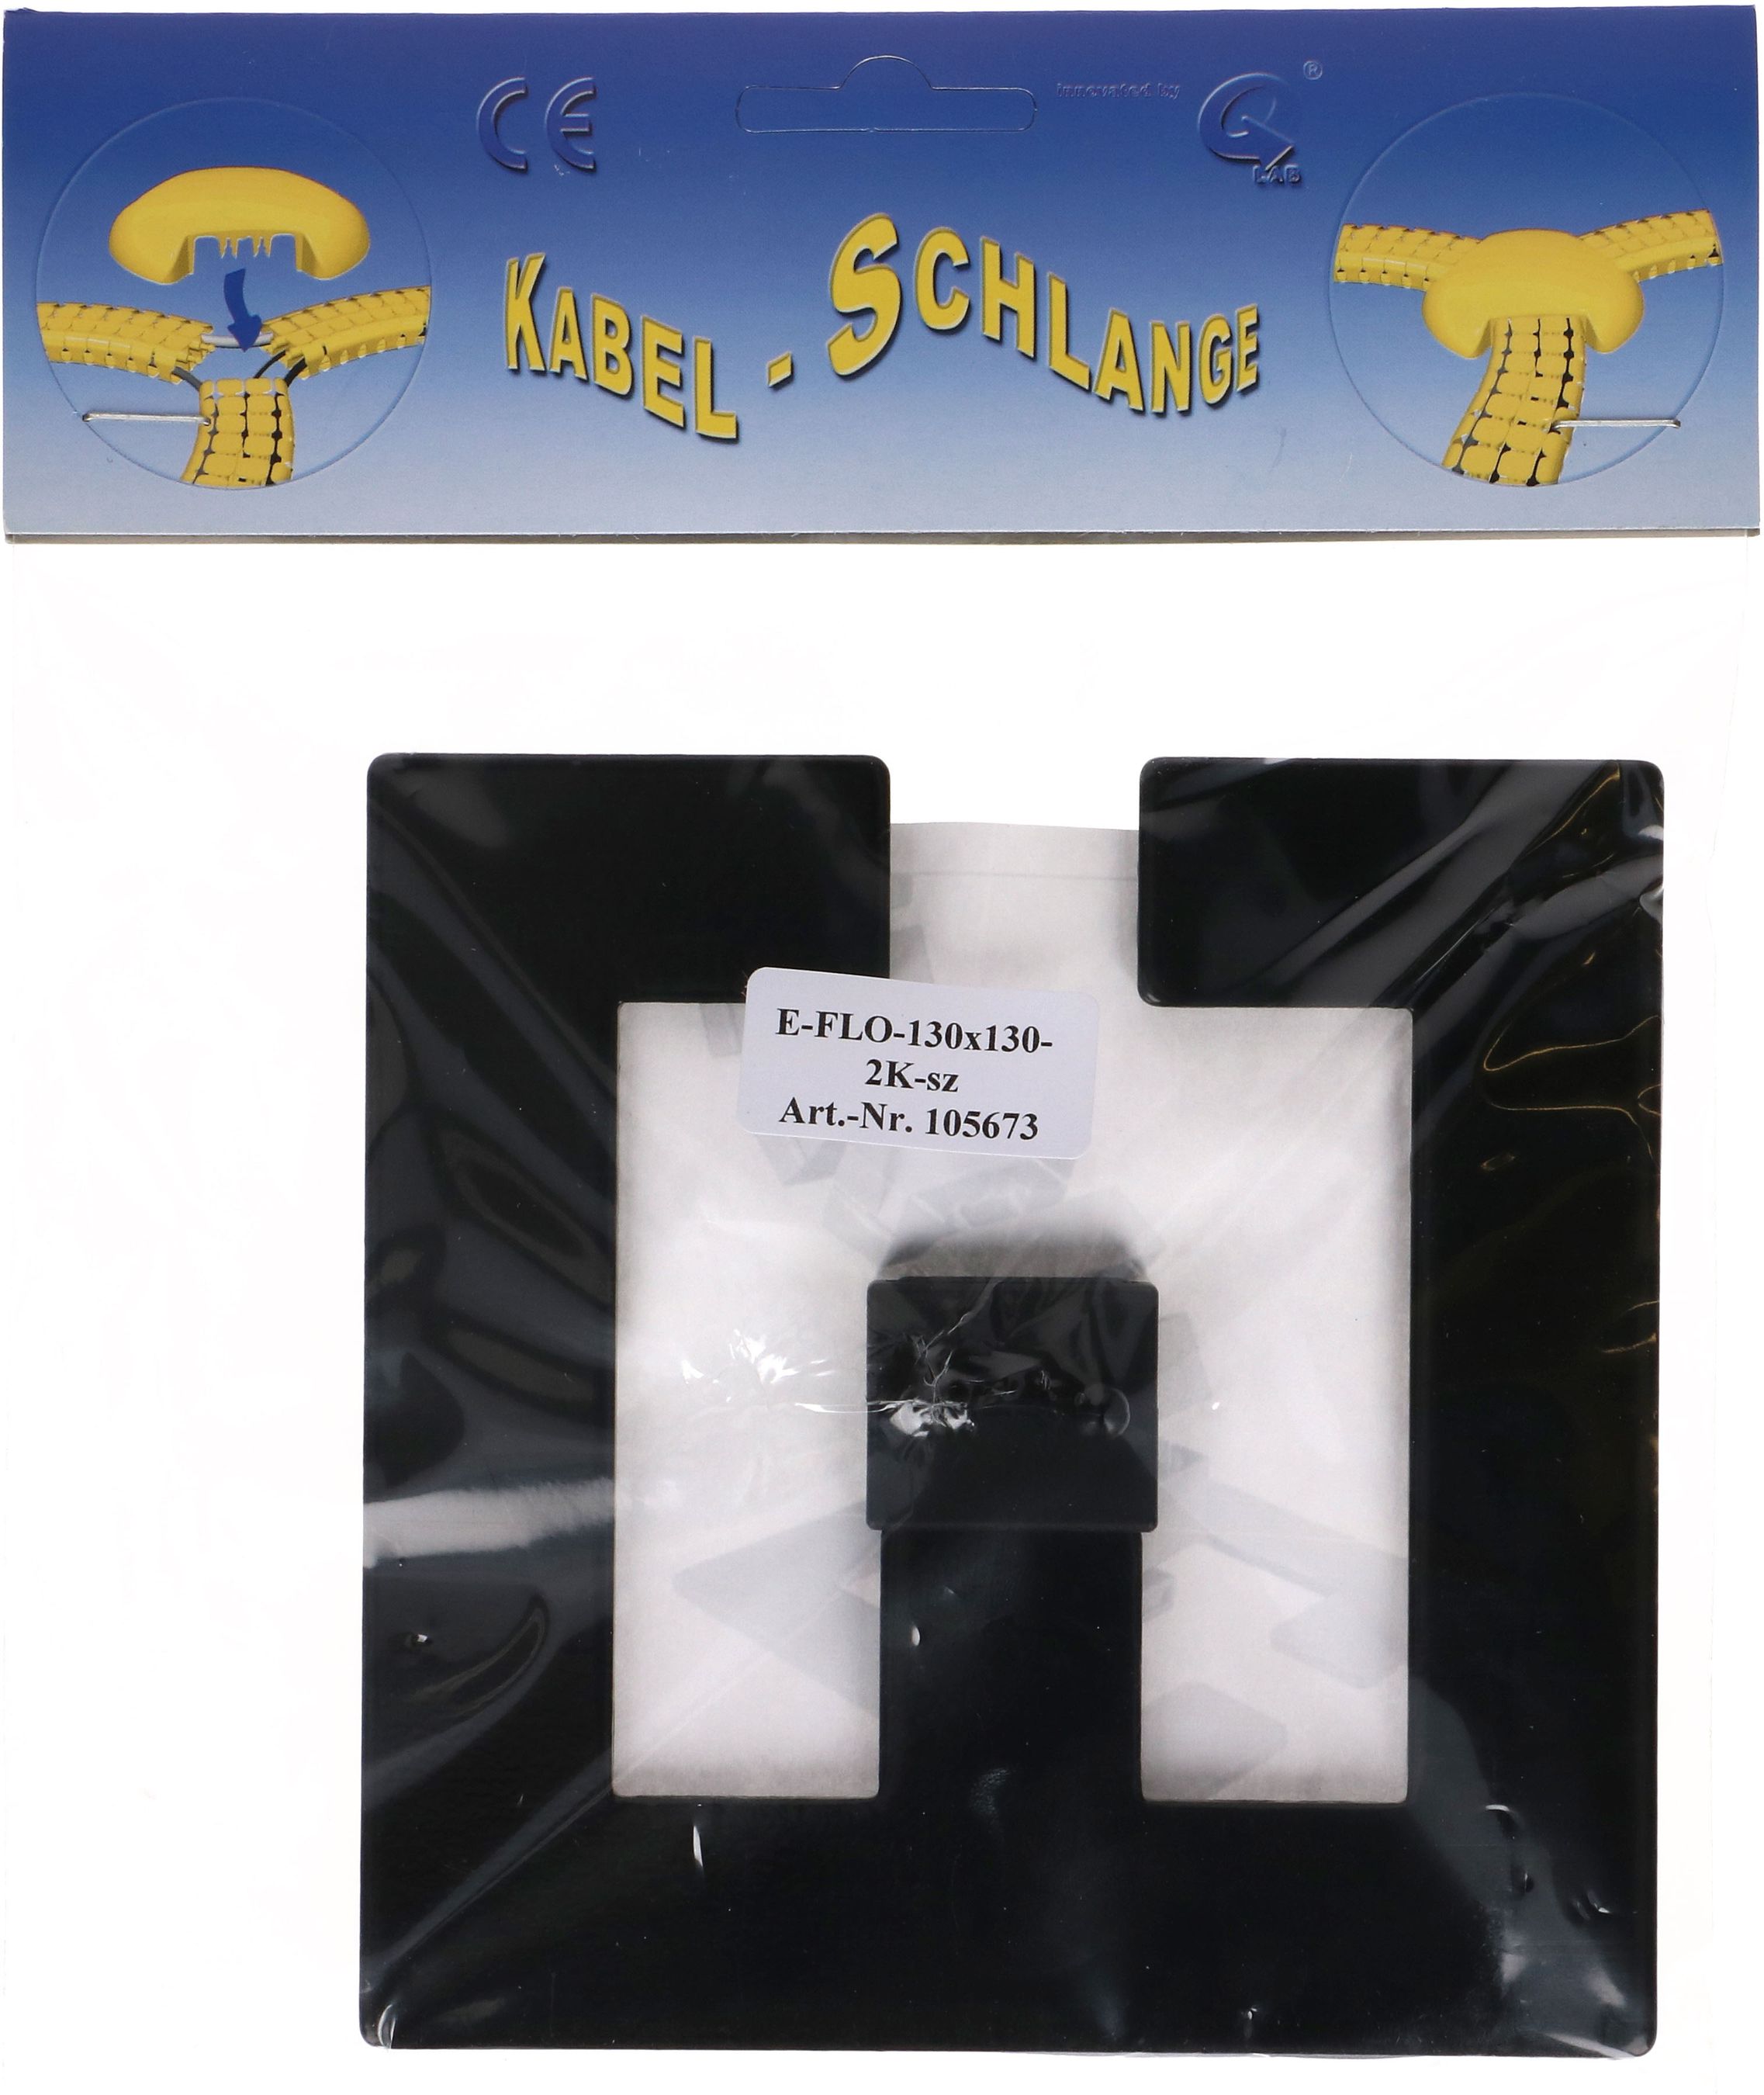 Bodenplatte Easy-Floor-2K schwarz RAL9005